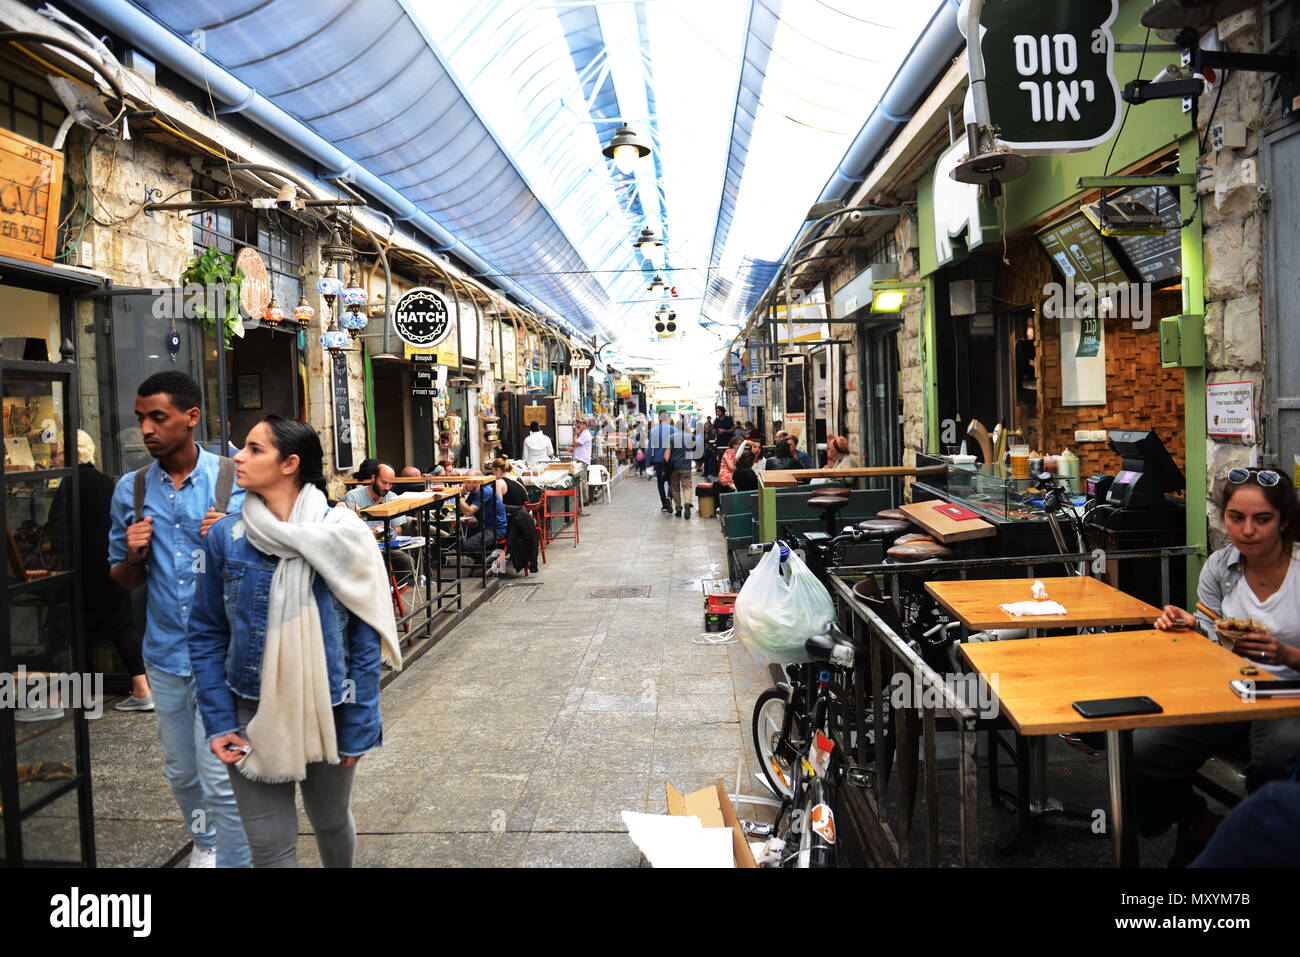 Bars and restaurants dominate the Machane Yehuda market. Stock Photo